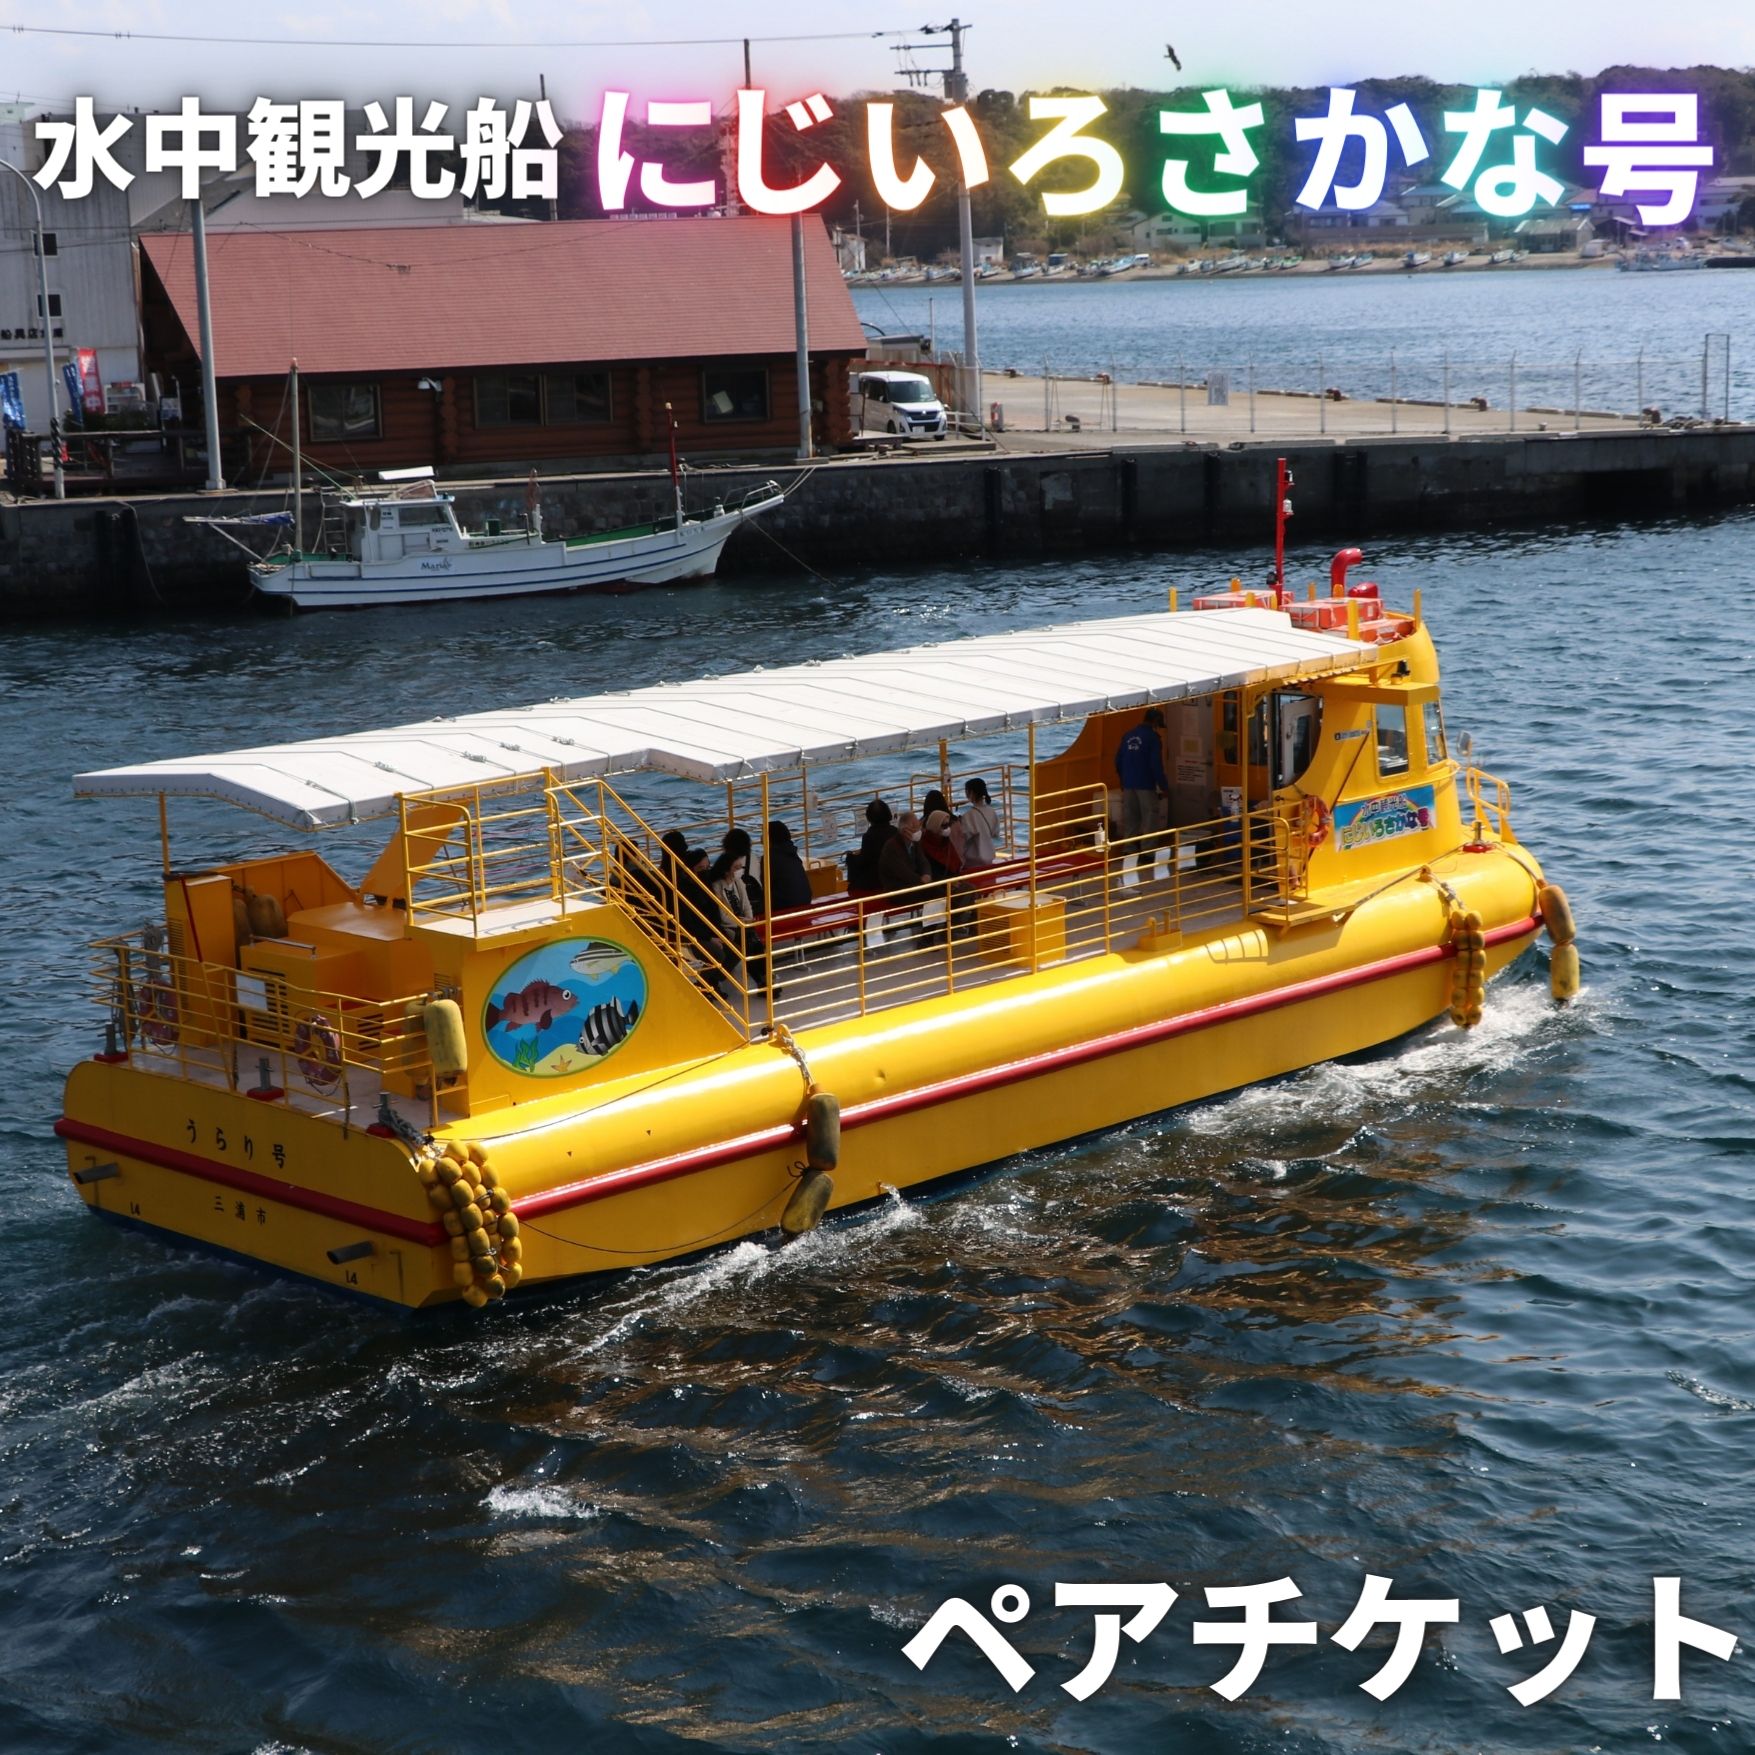 【ふるさと納税】B12-003 水中観光船 にじいろさかな号 ペア乗船券